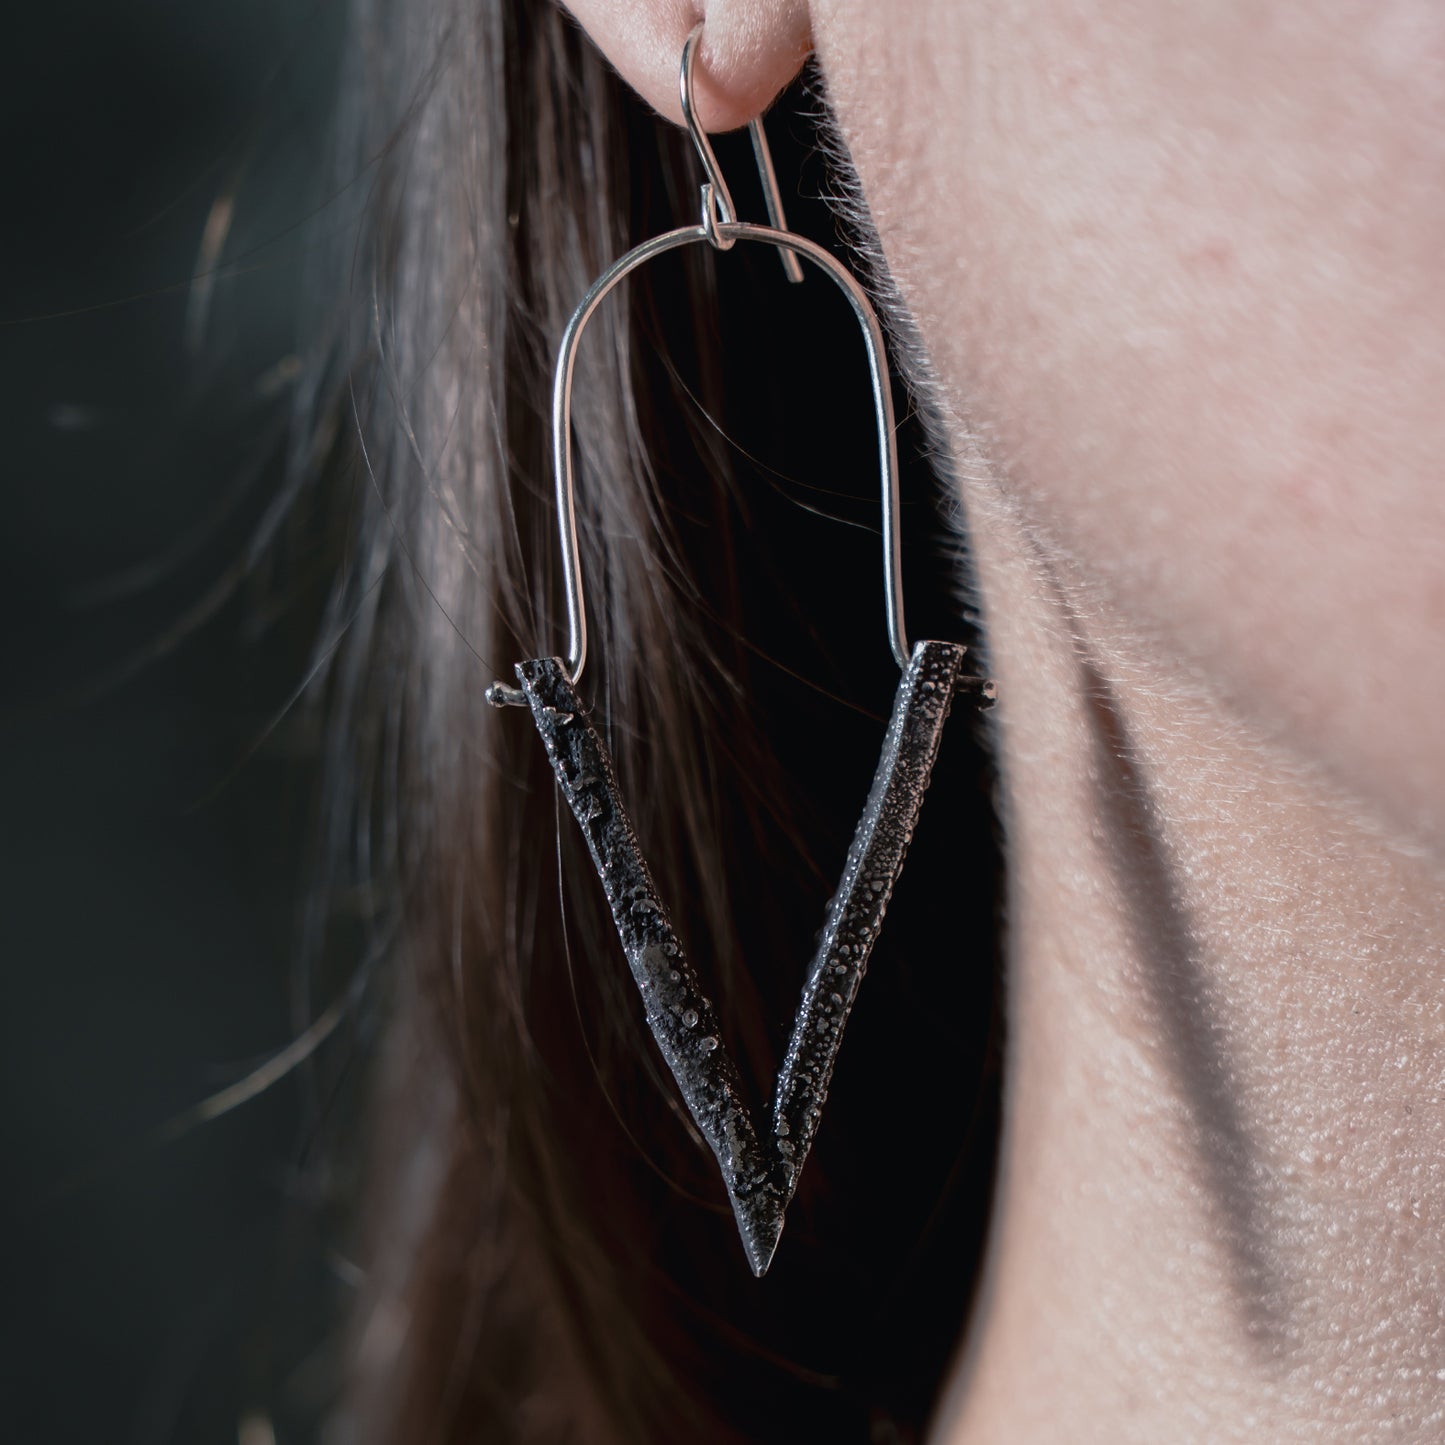 Venom earrings